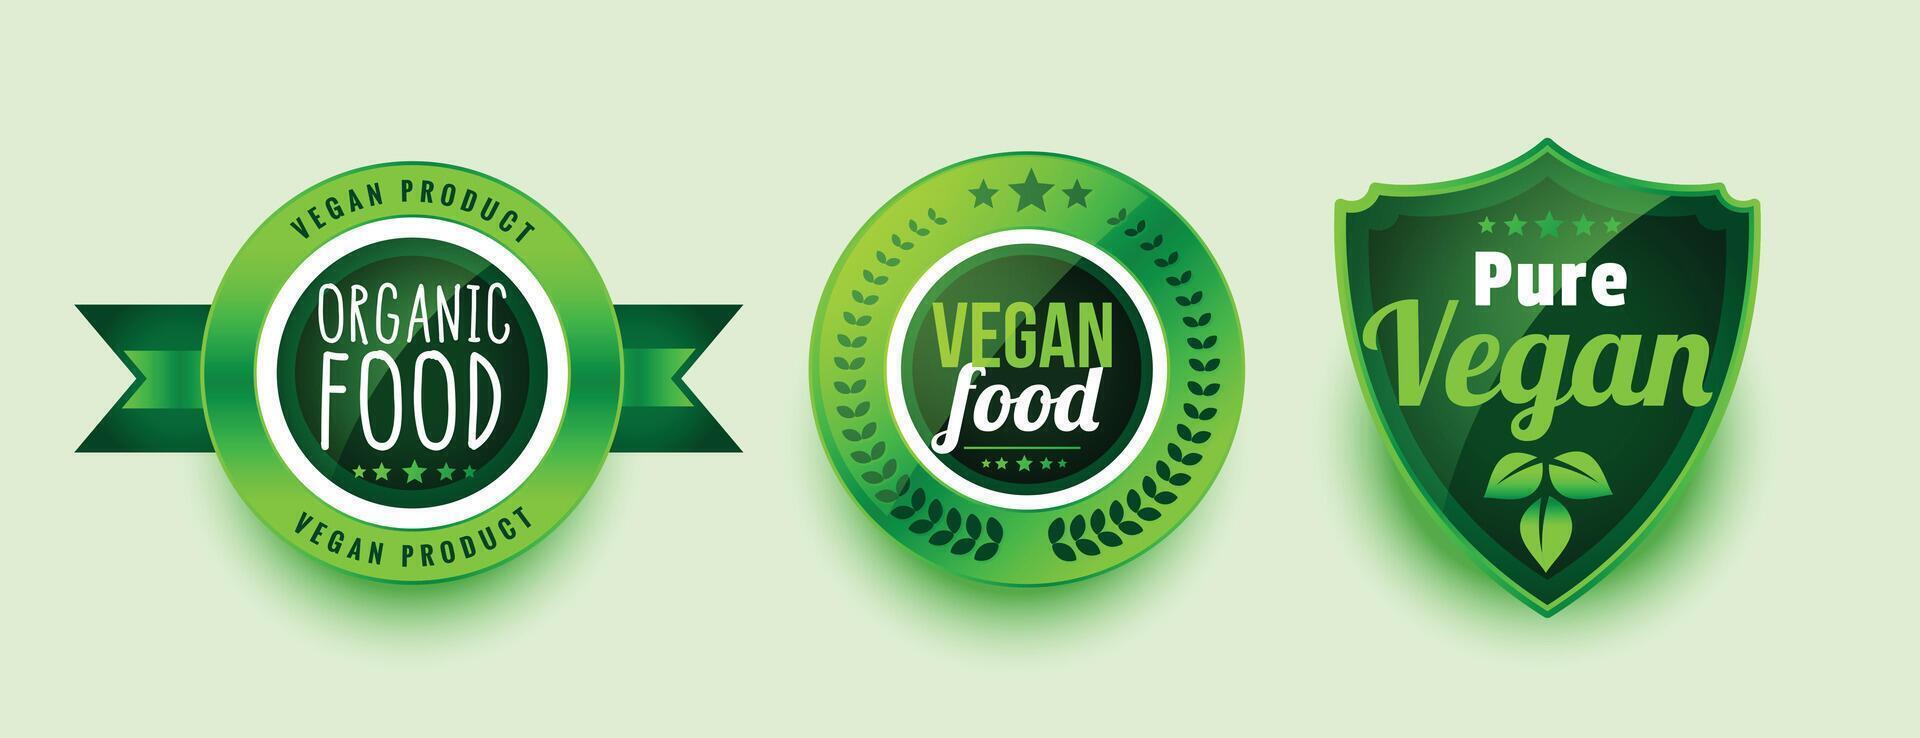 zuiver biologisch veganistisch voedsel etiketten of stickers vector